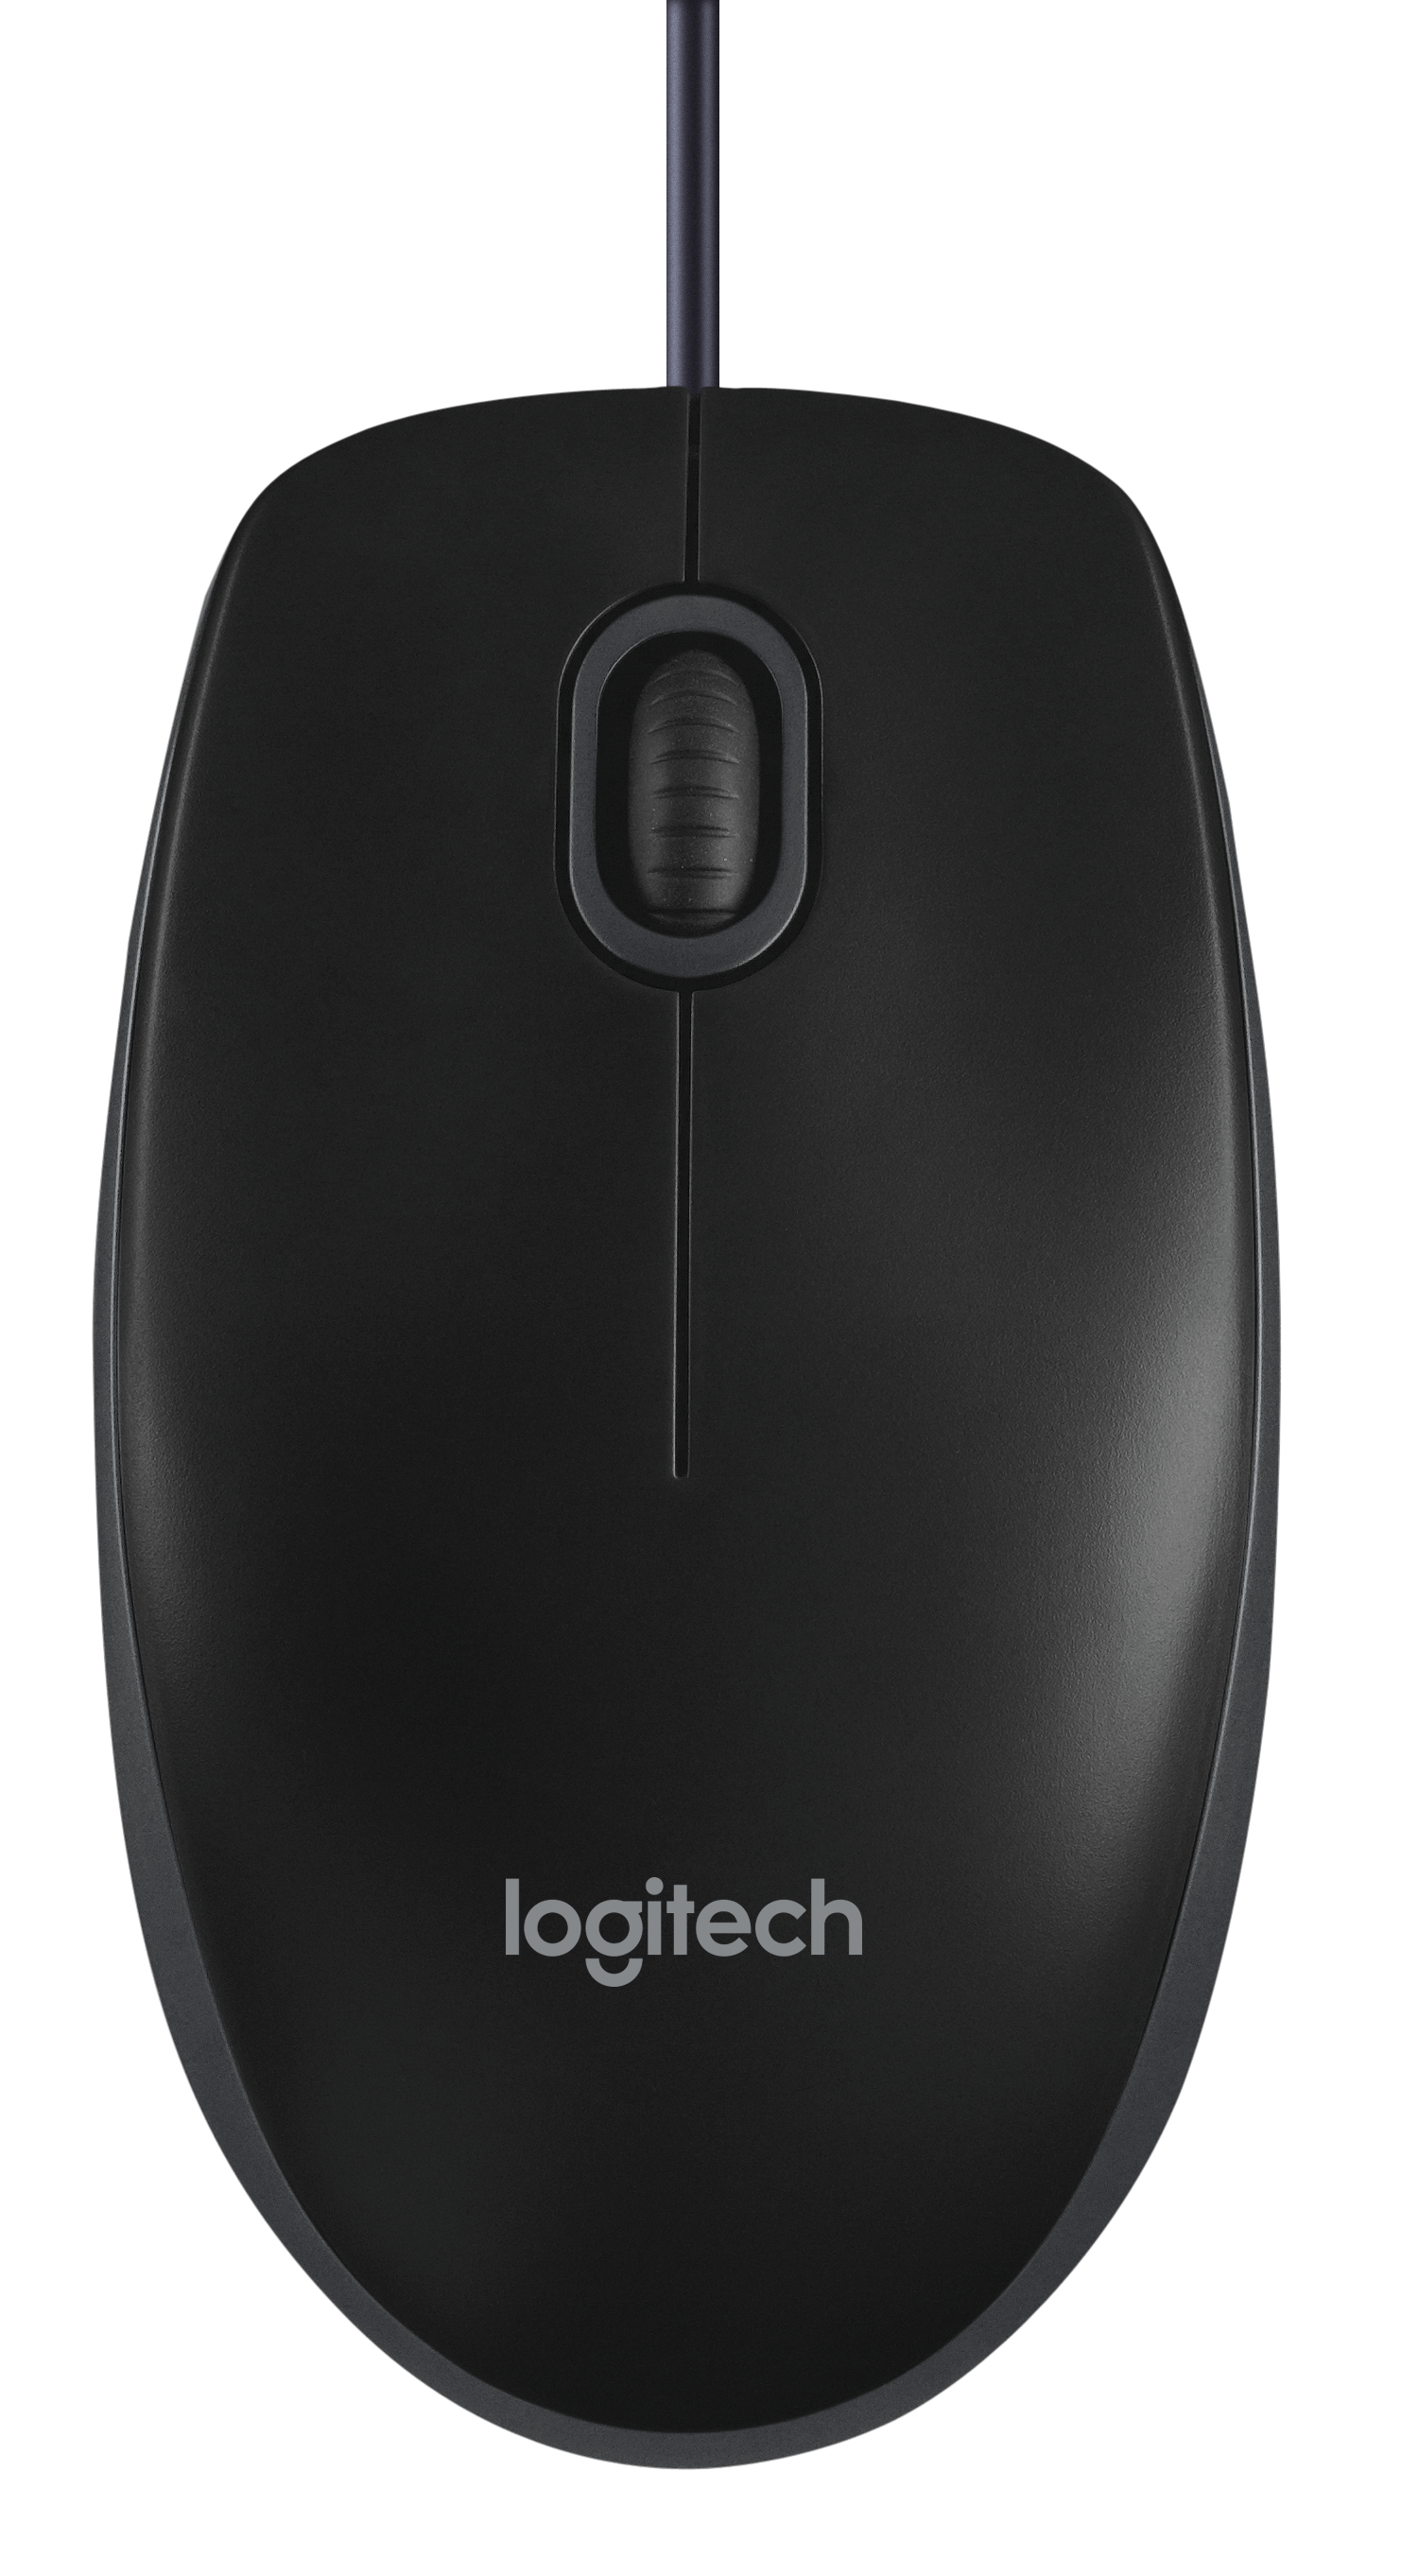 Logitech Maus B100 Optical USB Maus, schwarz